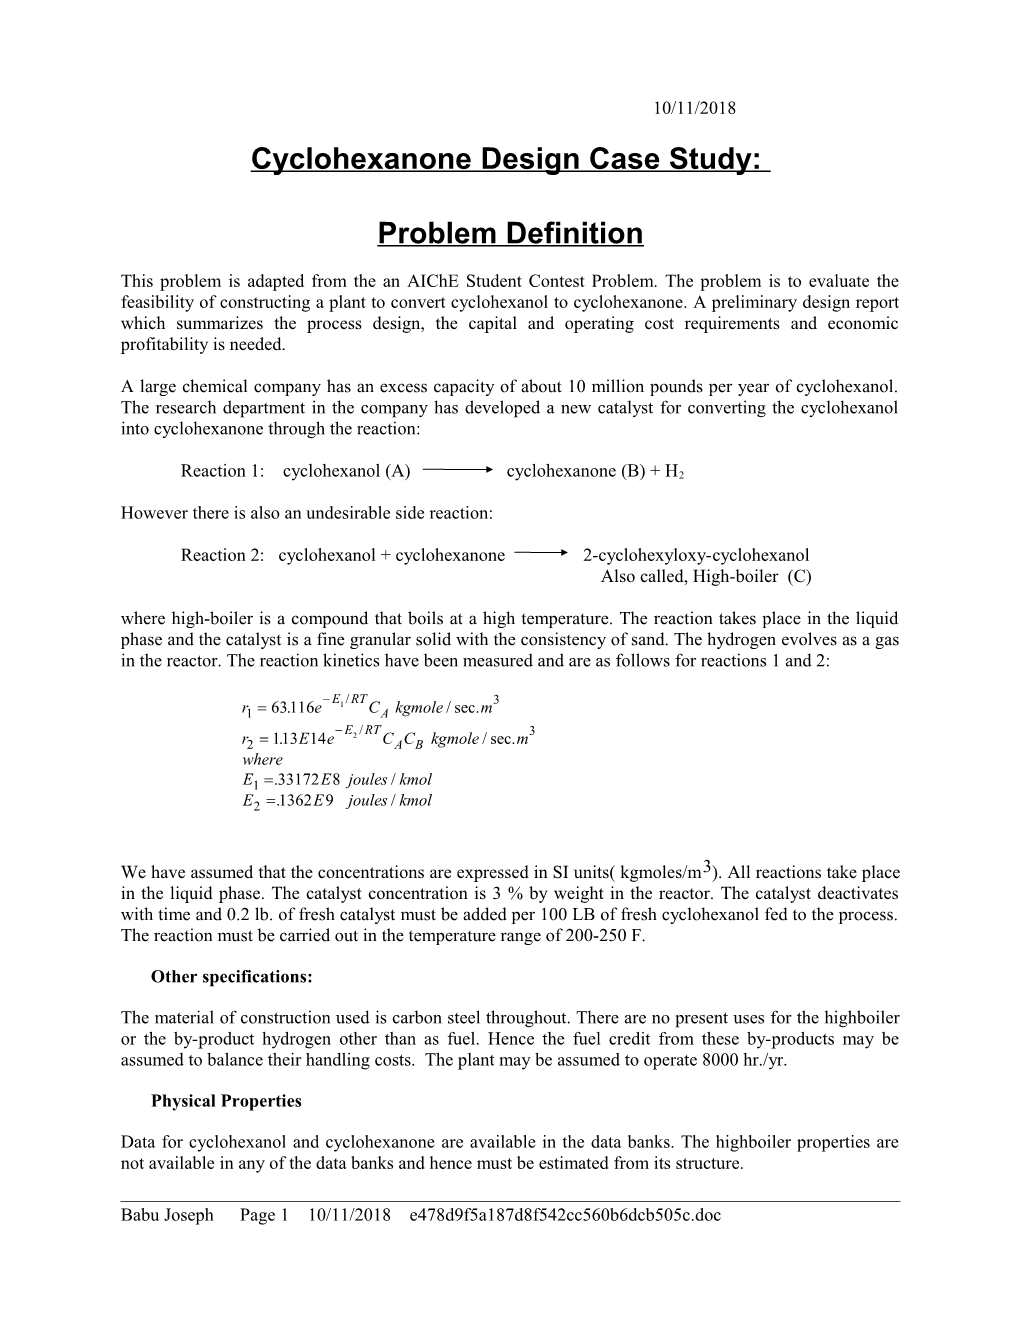 Cyclohexanone Design Case Study